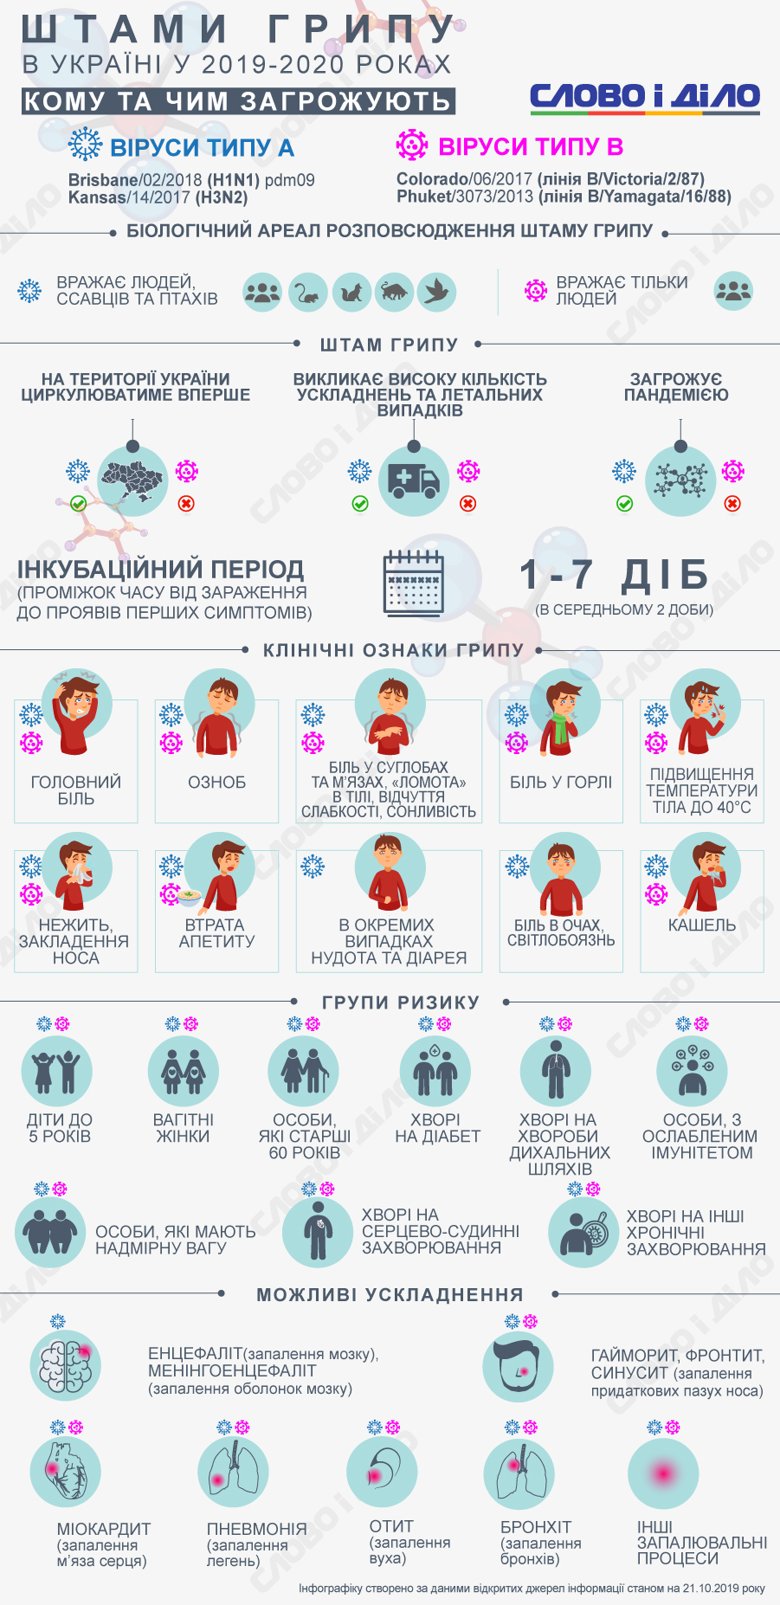 В Украине ожидается циркуляция двух новых штаммов гриппа и еще двух, от которых у украинцев уже частично есть иммунитет.